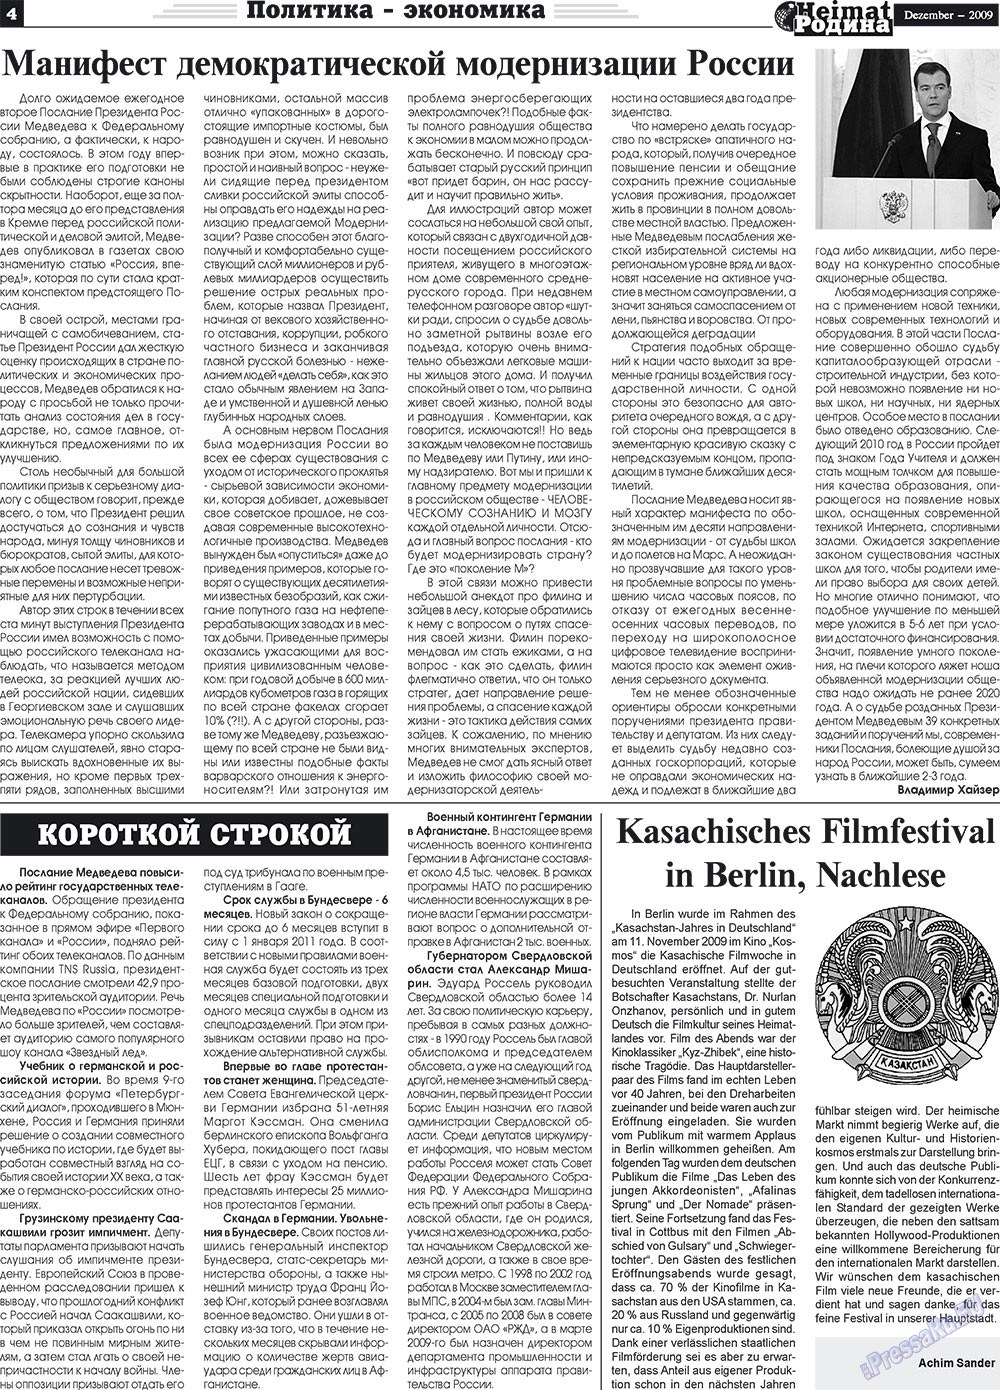 Heimat-Родина (газета). 2009 год, номер 12, стр. 4